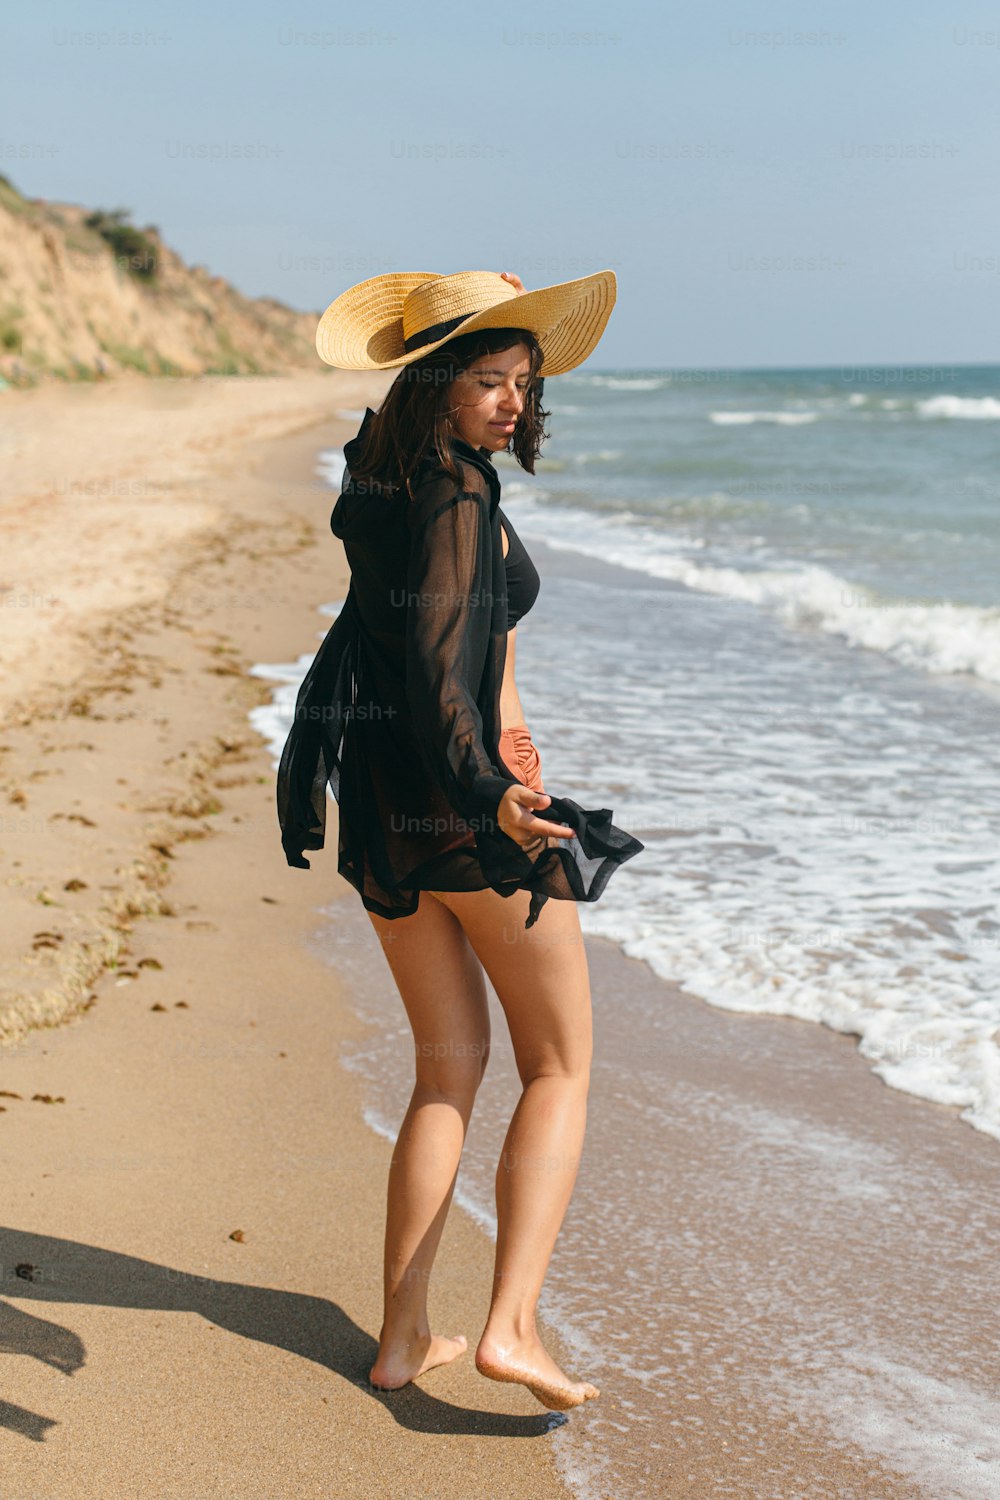 Schöne sorglose Frau mit Hut, die am Sandstrand an den Wellen des Meeres spazieren geht und sich entspannt. Sommerferien. Fit stylische junge Frau in hellschwarzem Hemd und Strohhut genießt Urlaub auf tropischer Insel